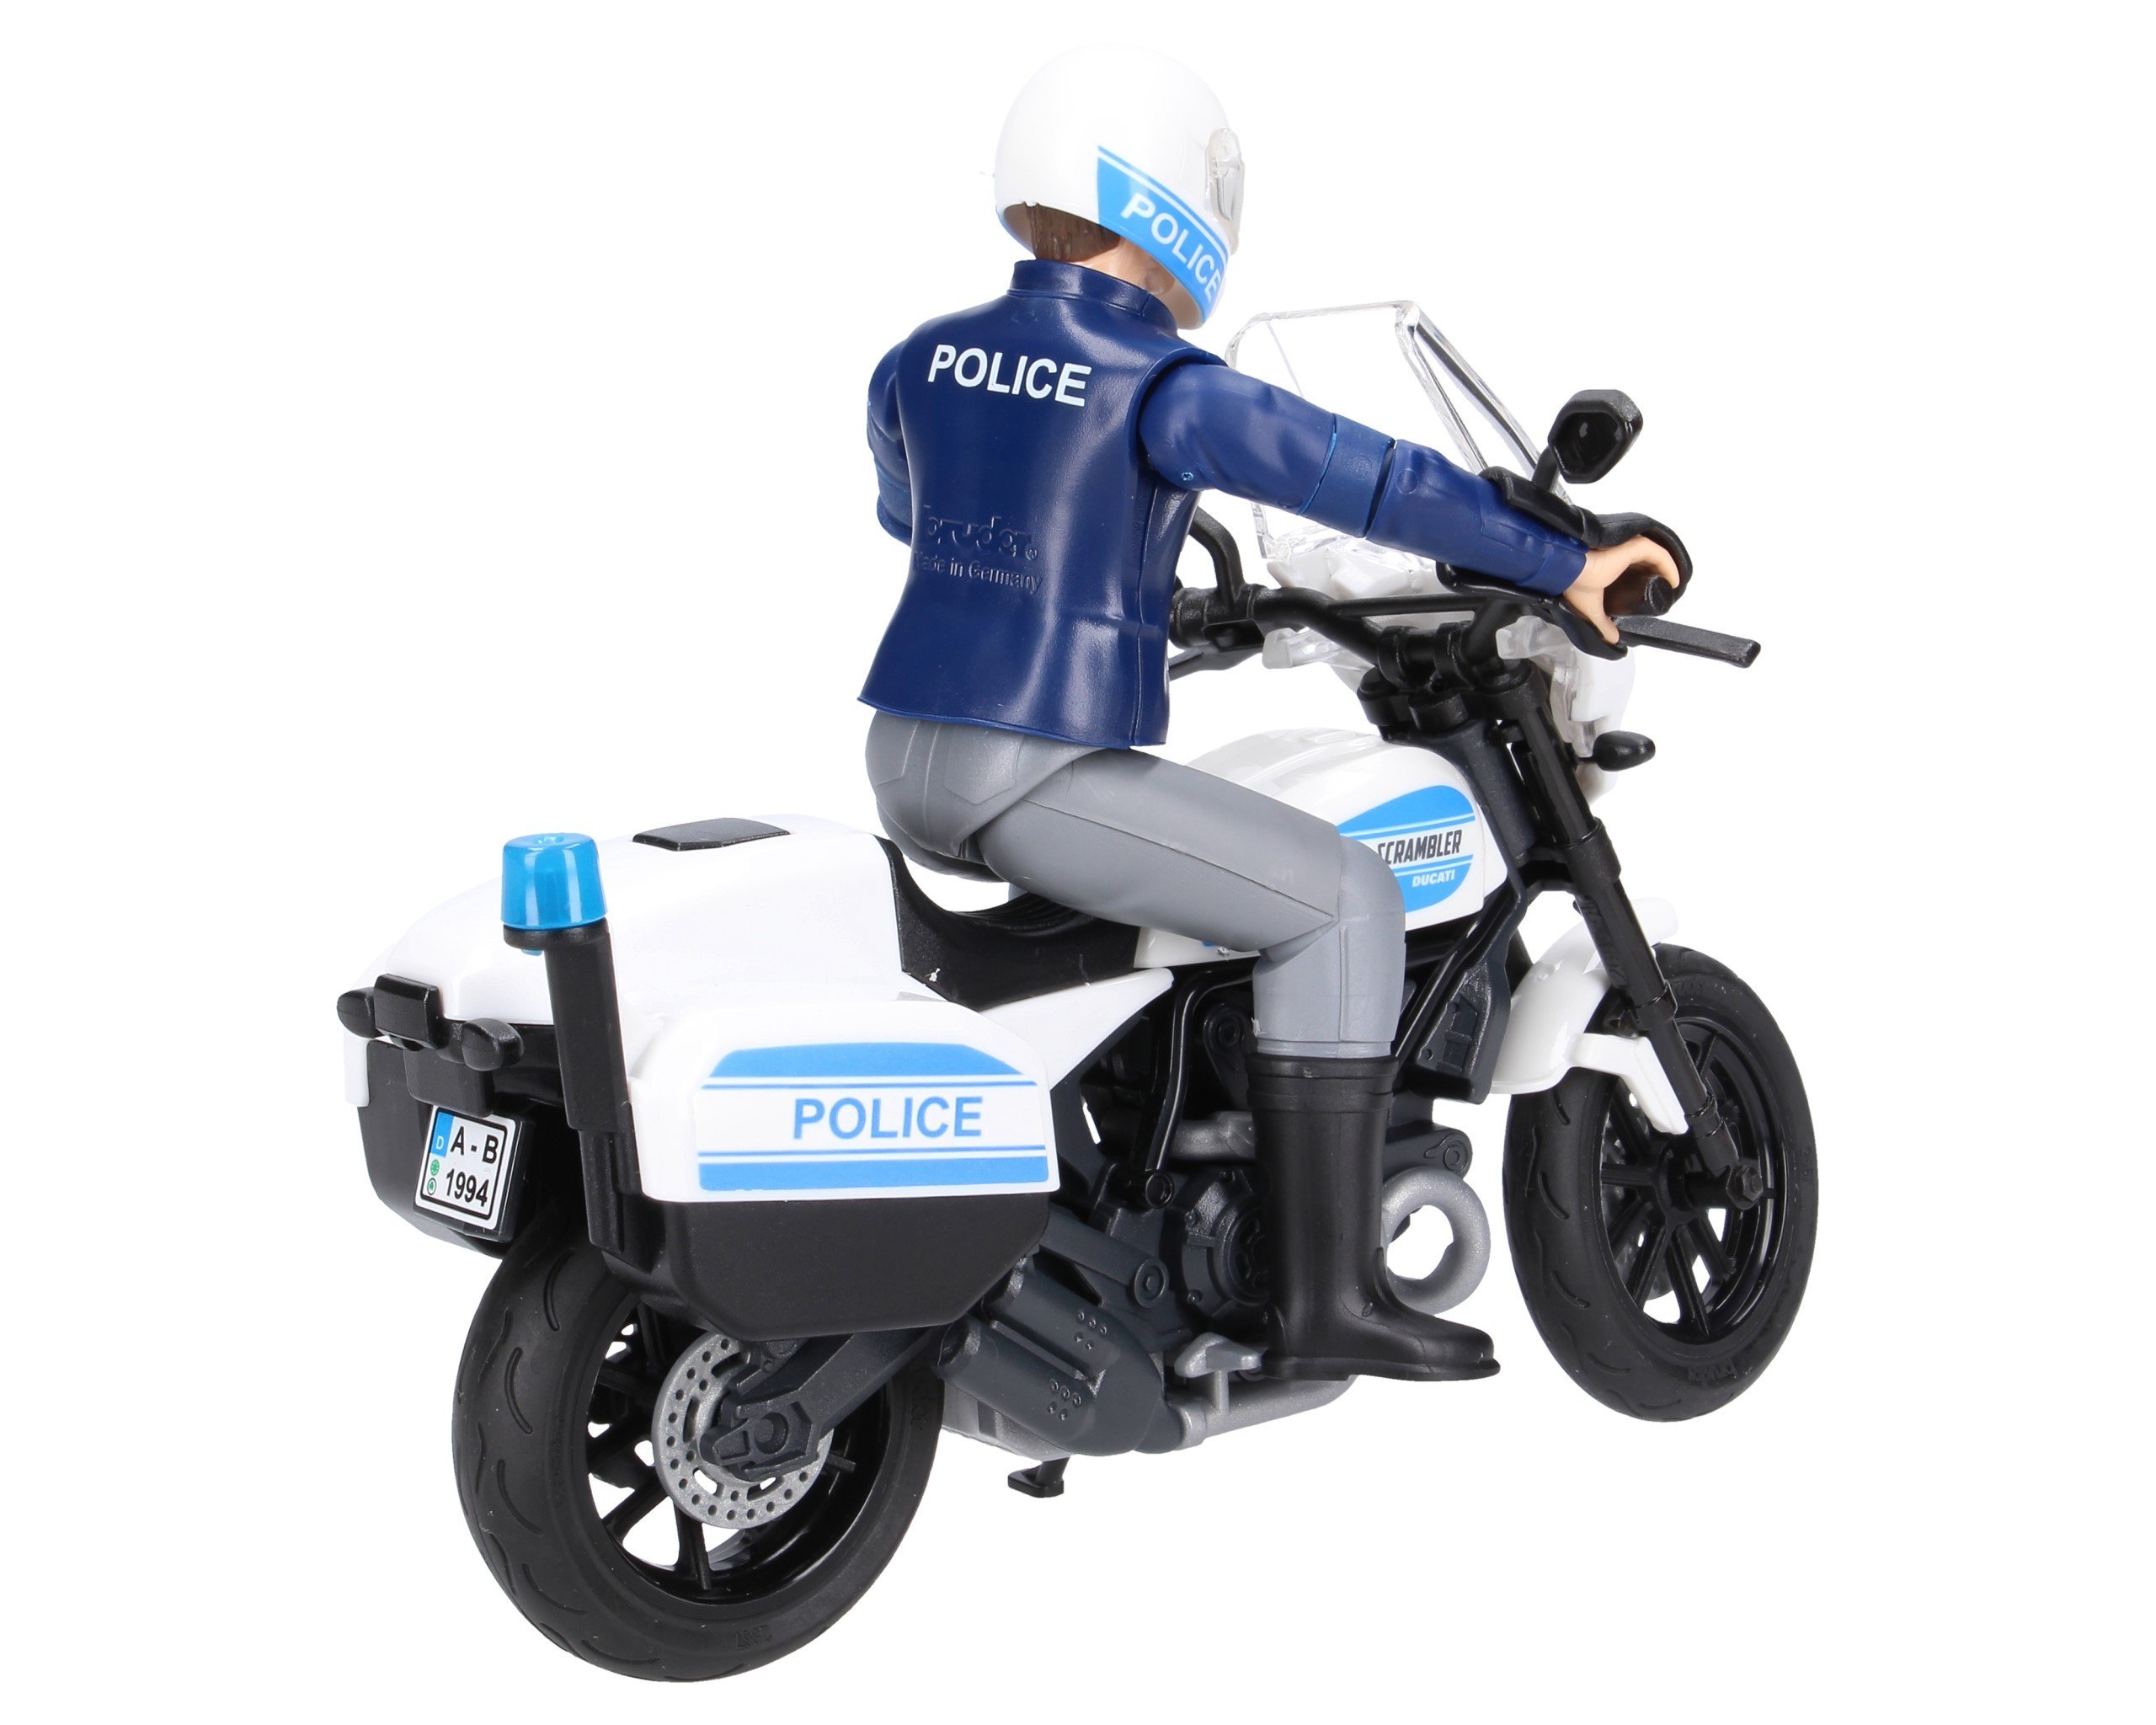 Bruder 62731 Motocykl policyjny Scrambler Ducati z figurką policjanta 